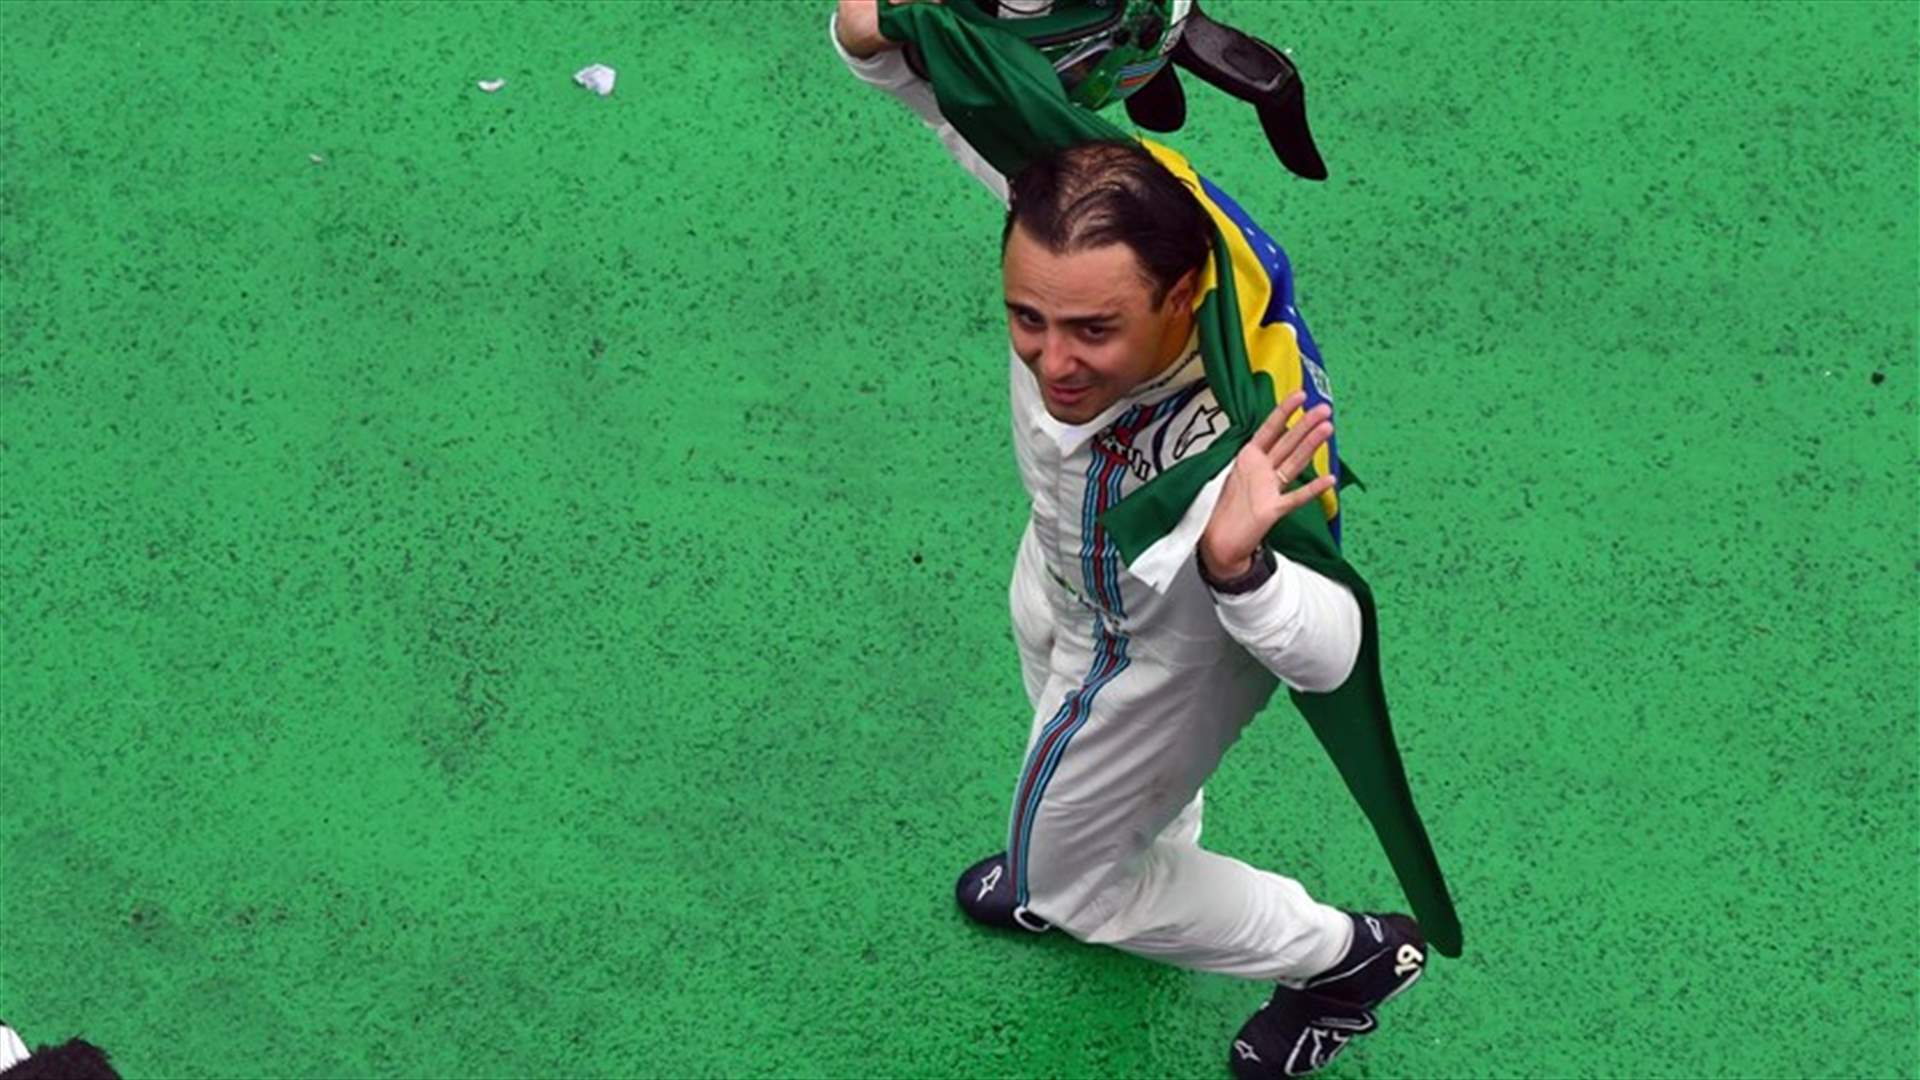 بالفيديو - بالدموع وخيبة الأمل.. البرازيلي ماسا يودع جماهير بلاده